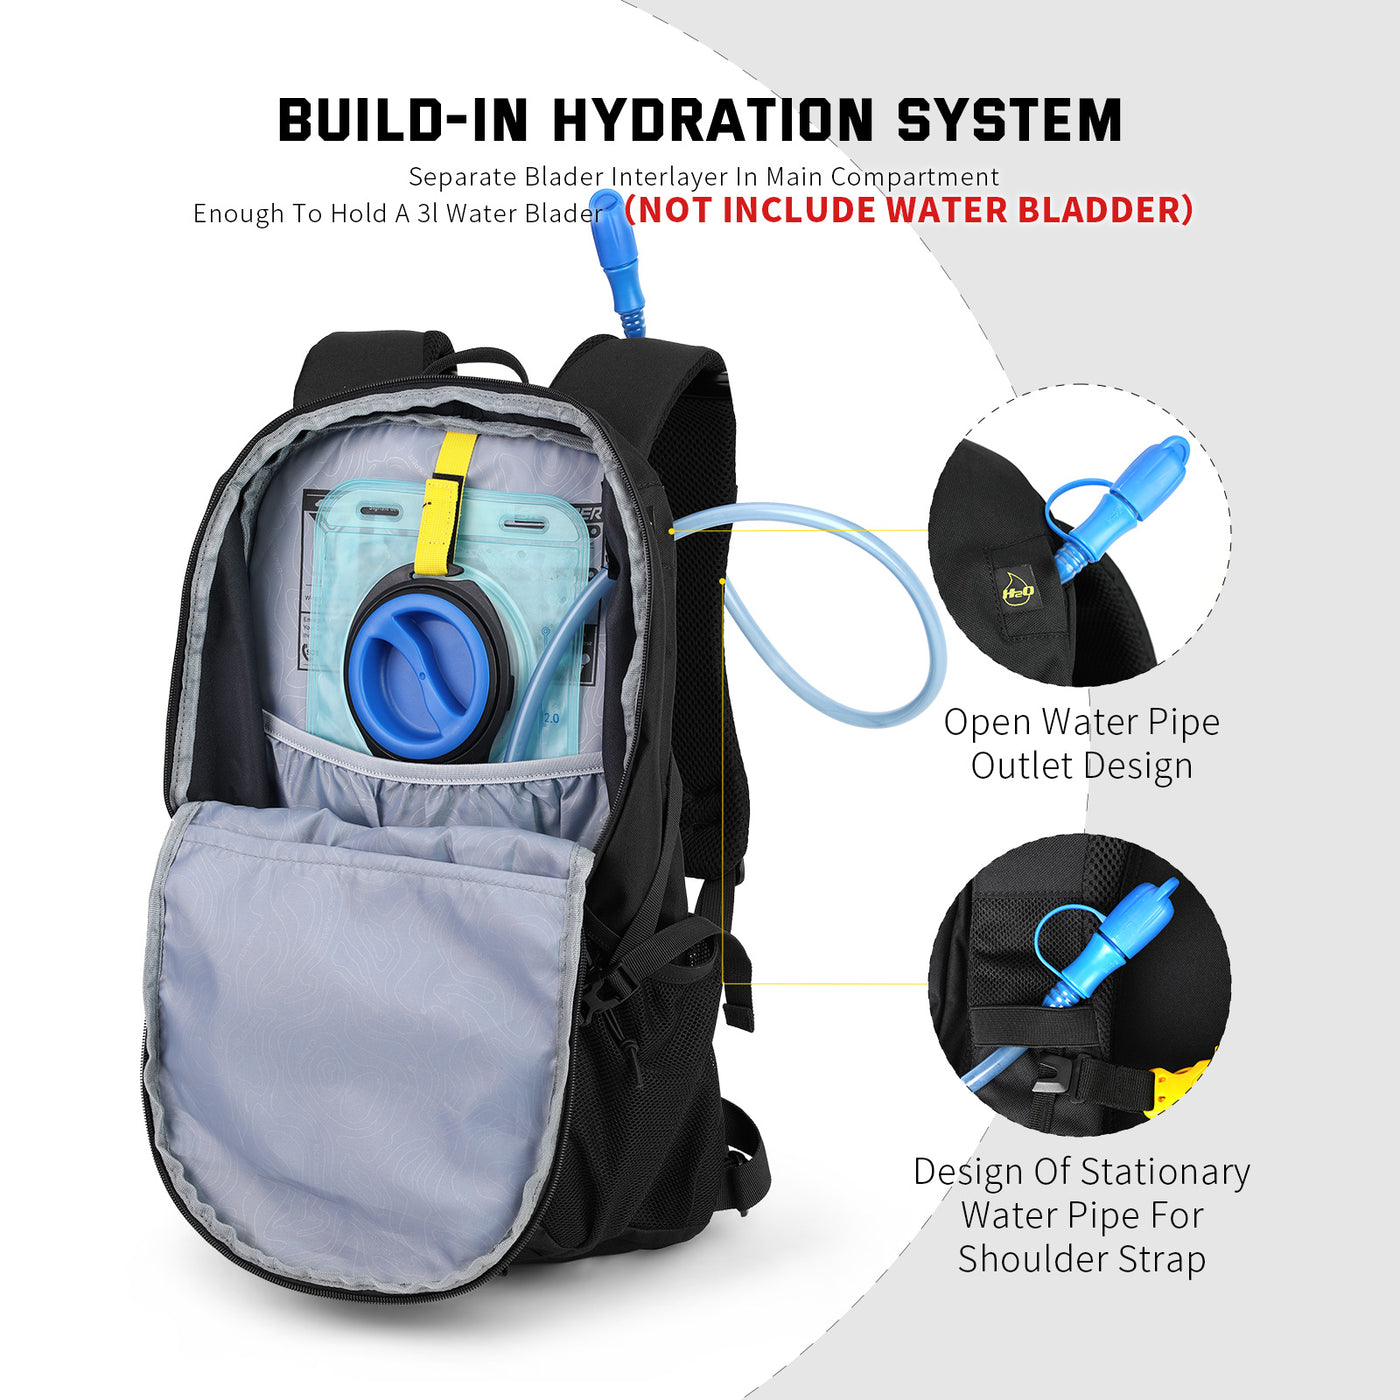 LANTC25 - SKYSPER 25L Hiking Daypack Waterproof Backpack